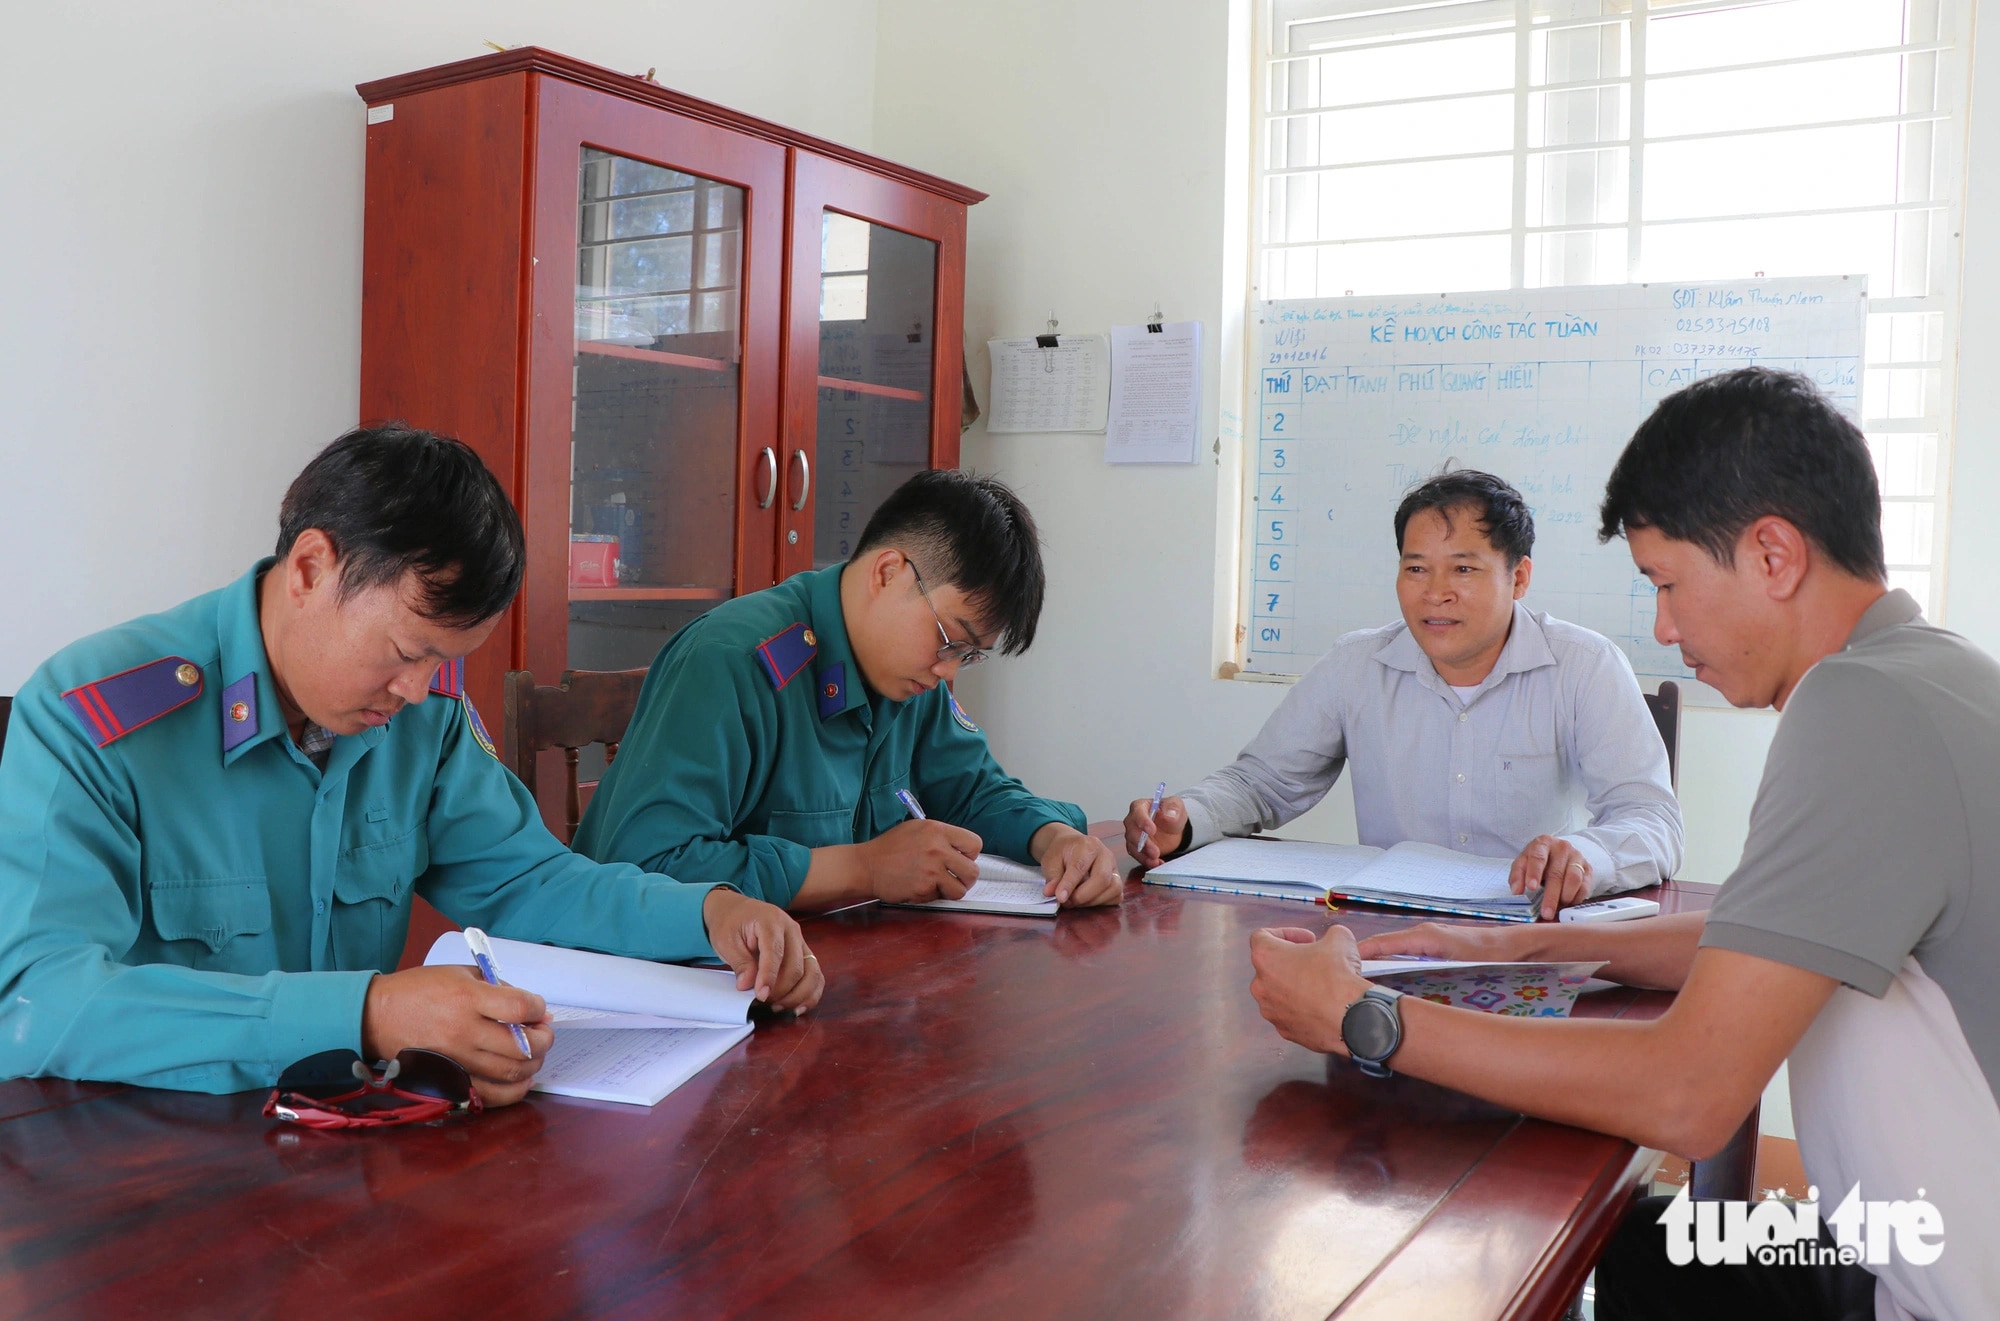 Do sức khỏe nên anh Nguyễn Nhất Chung không còn đi rừng, mà được bố trí công việc khác phù hợp ở Trạm quản lý bảo vệ rừng Phước Diêm - Ảnh: DUY NGỌC